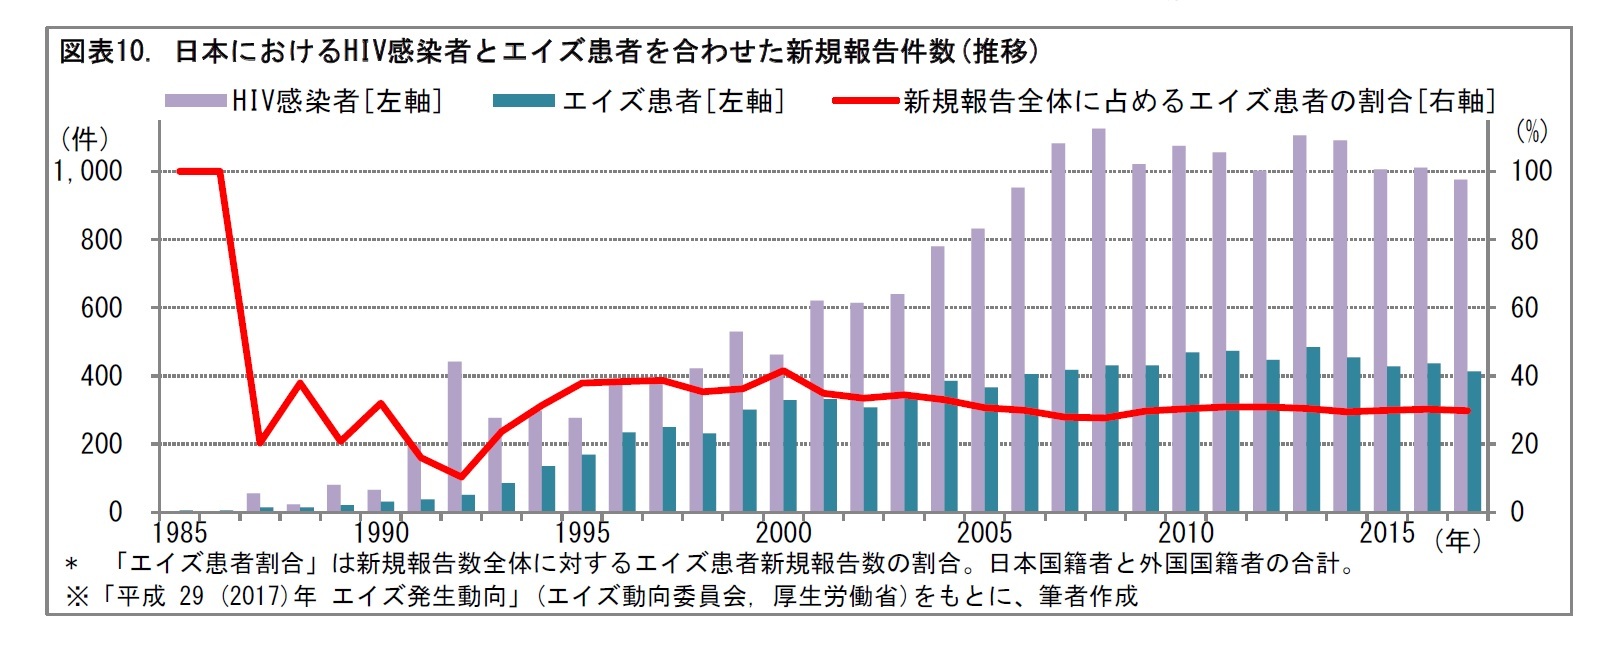 図表10. 日本におけるHIV感染者とエイズ患者を合わせた新規報告件数(推移)